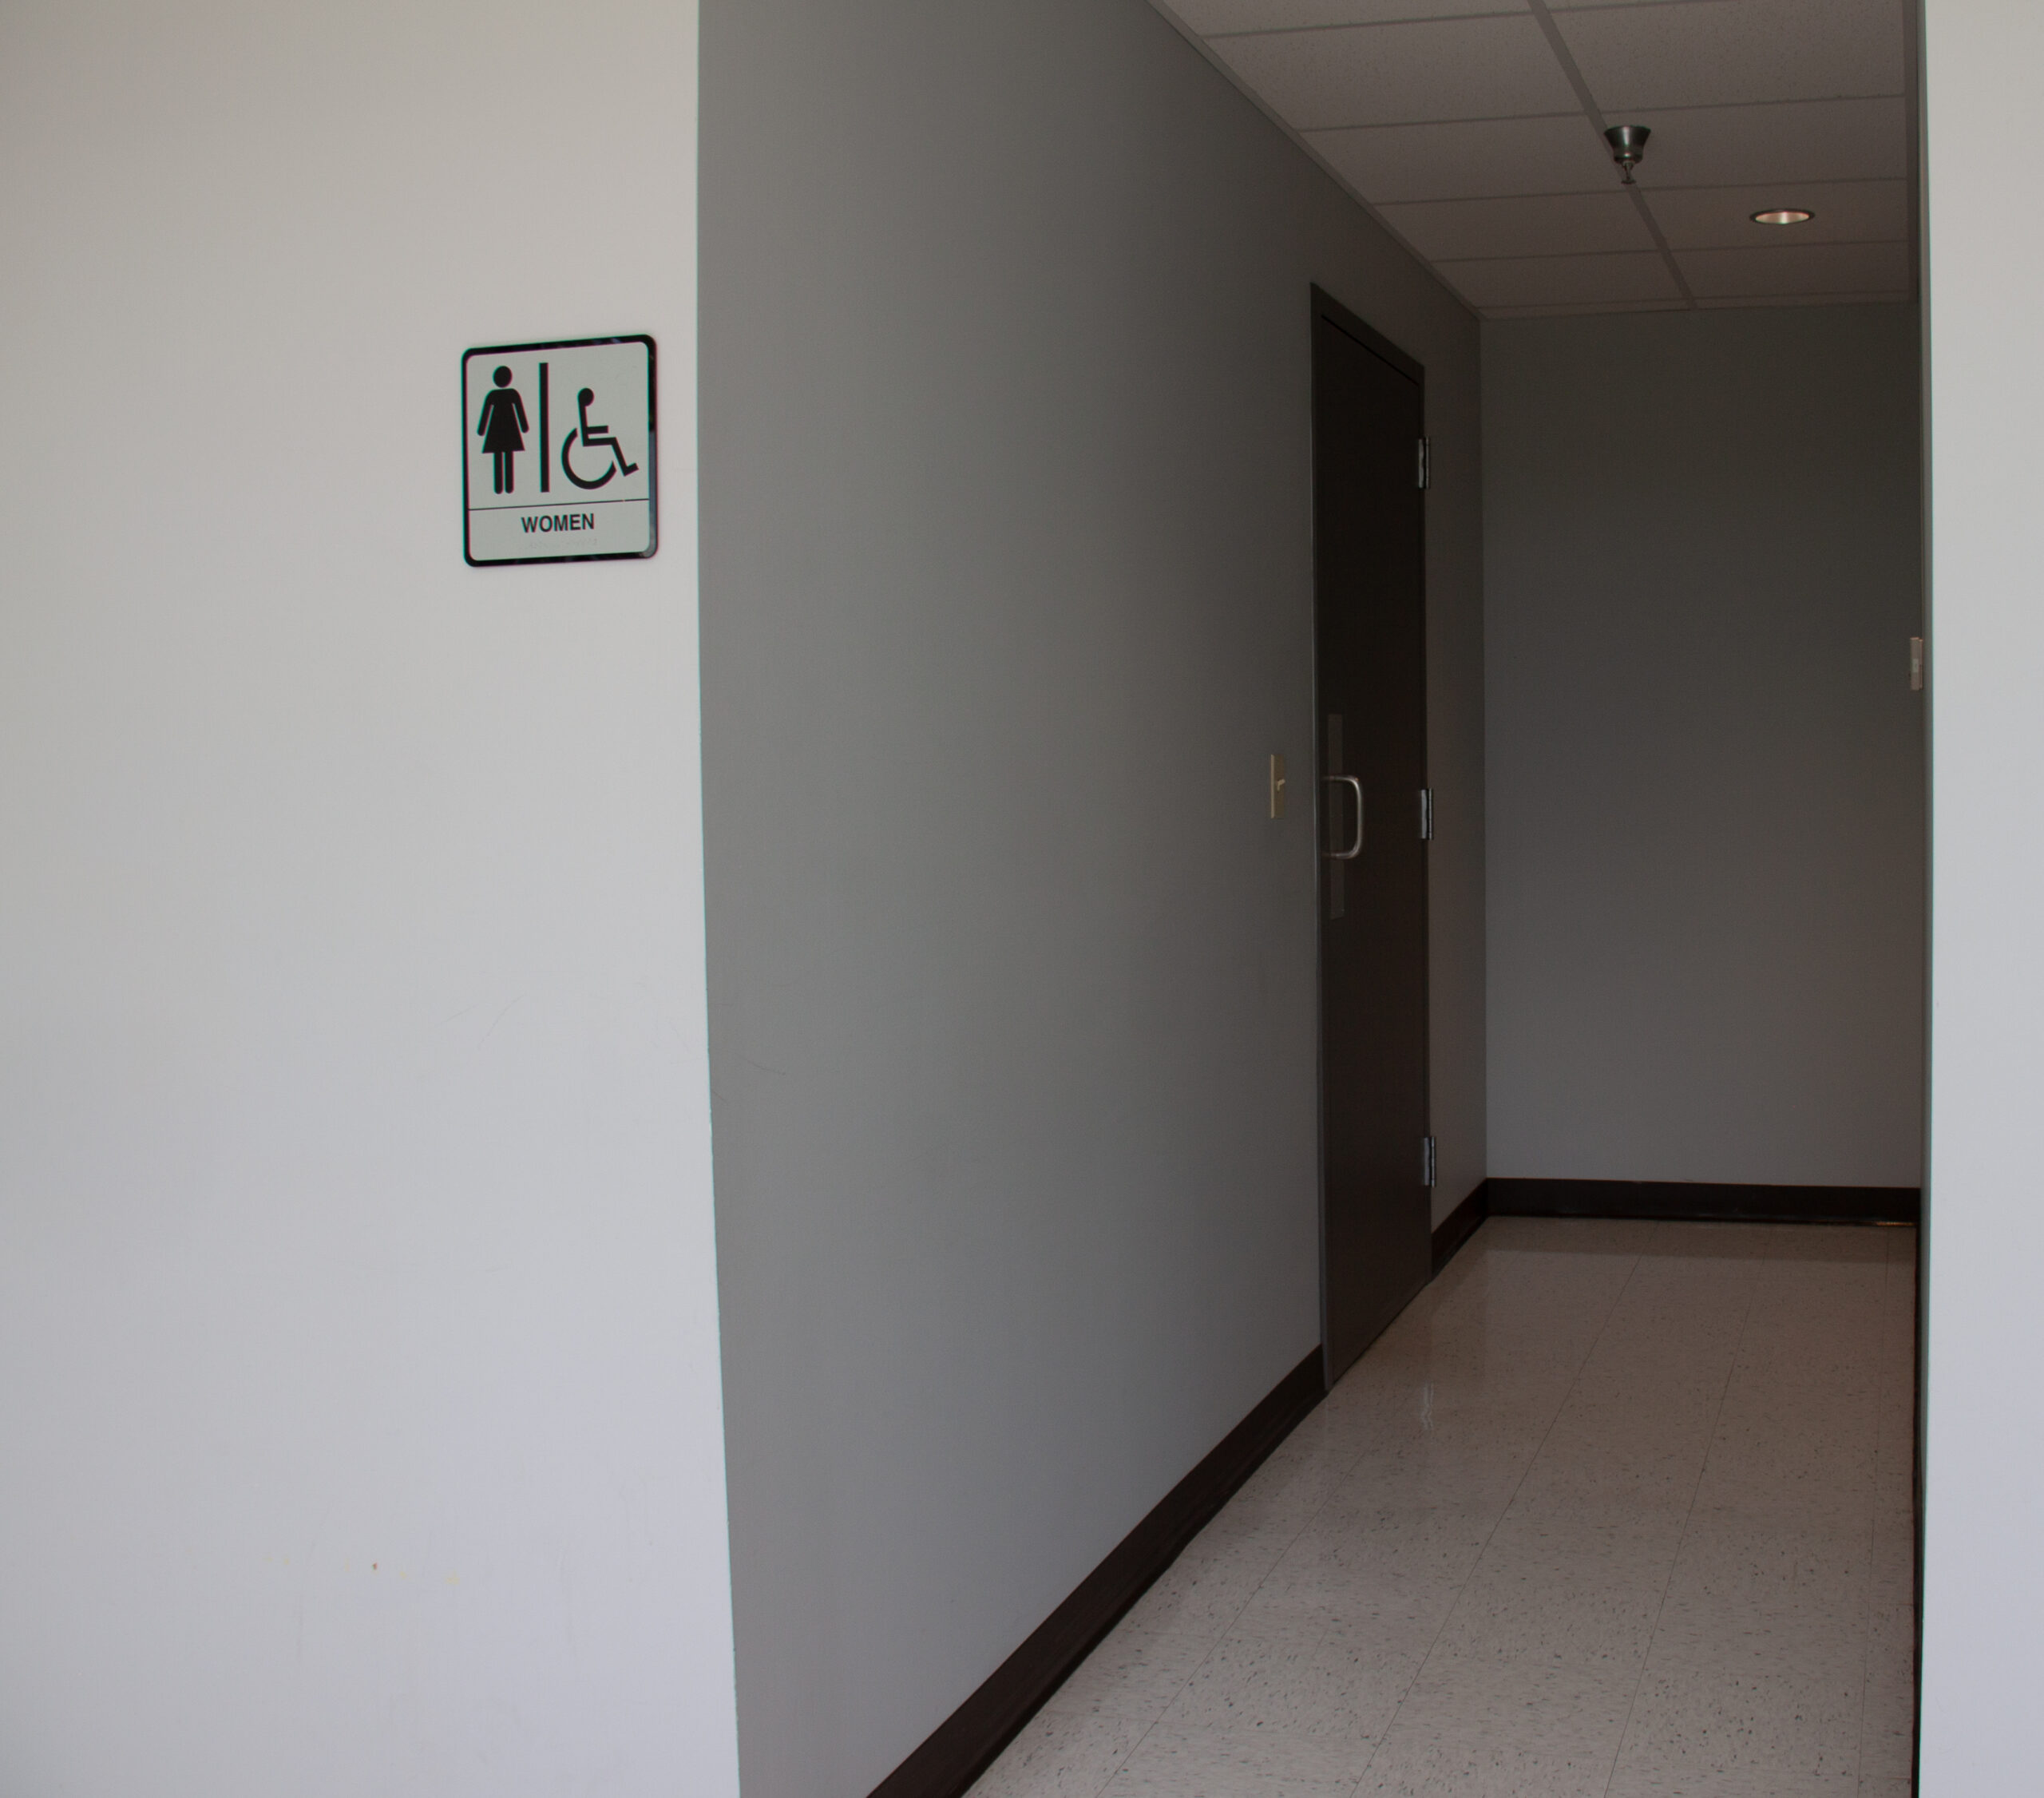 09012021 2 floor trimpe bathroom